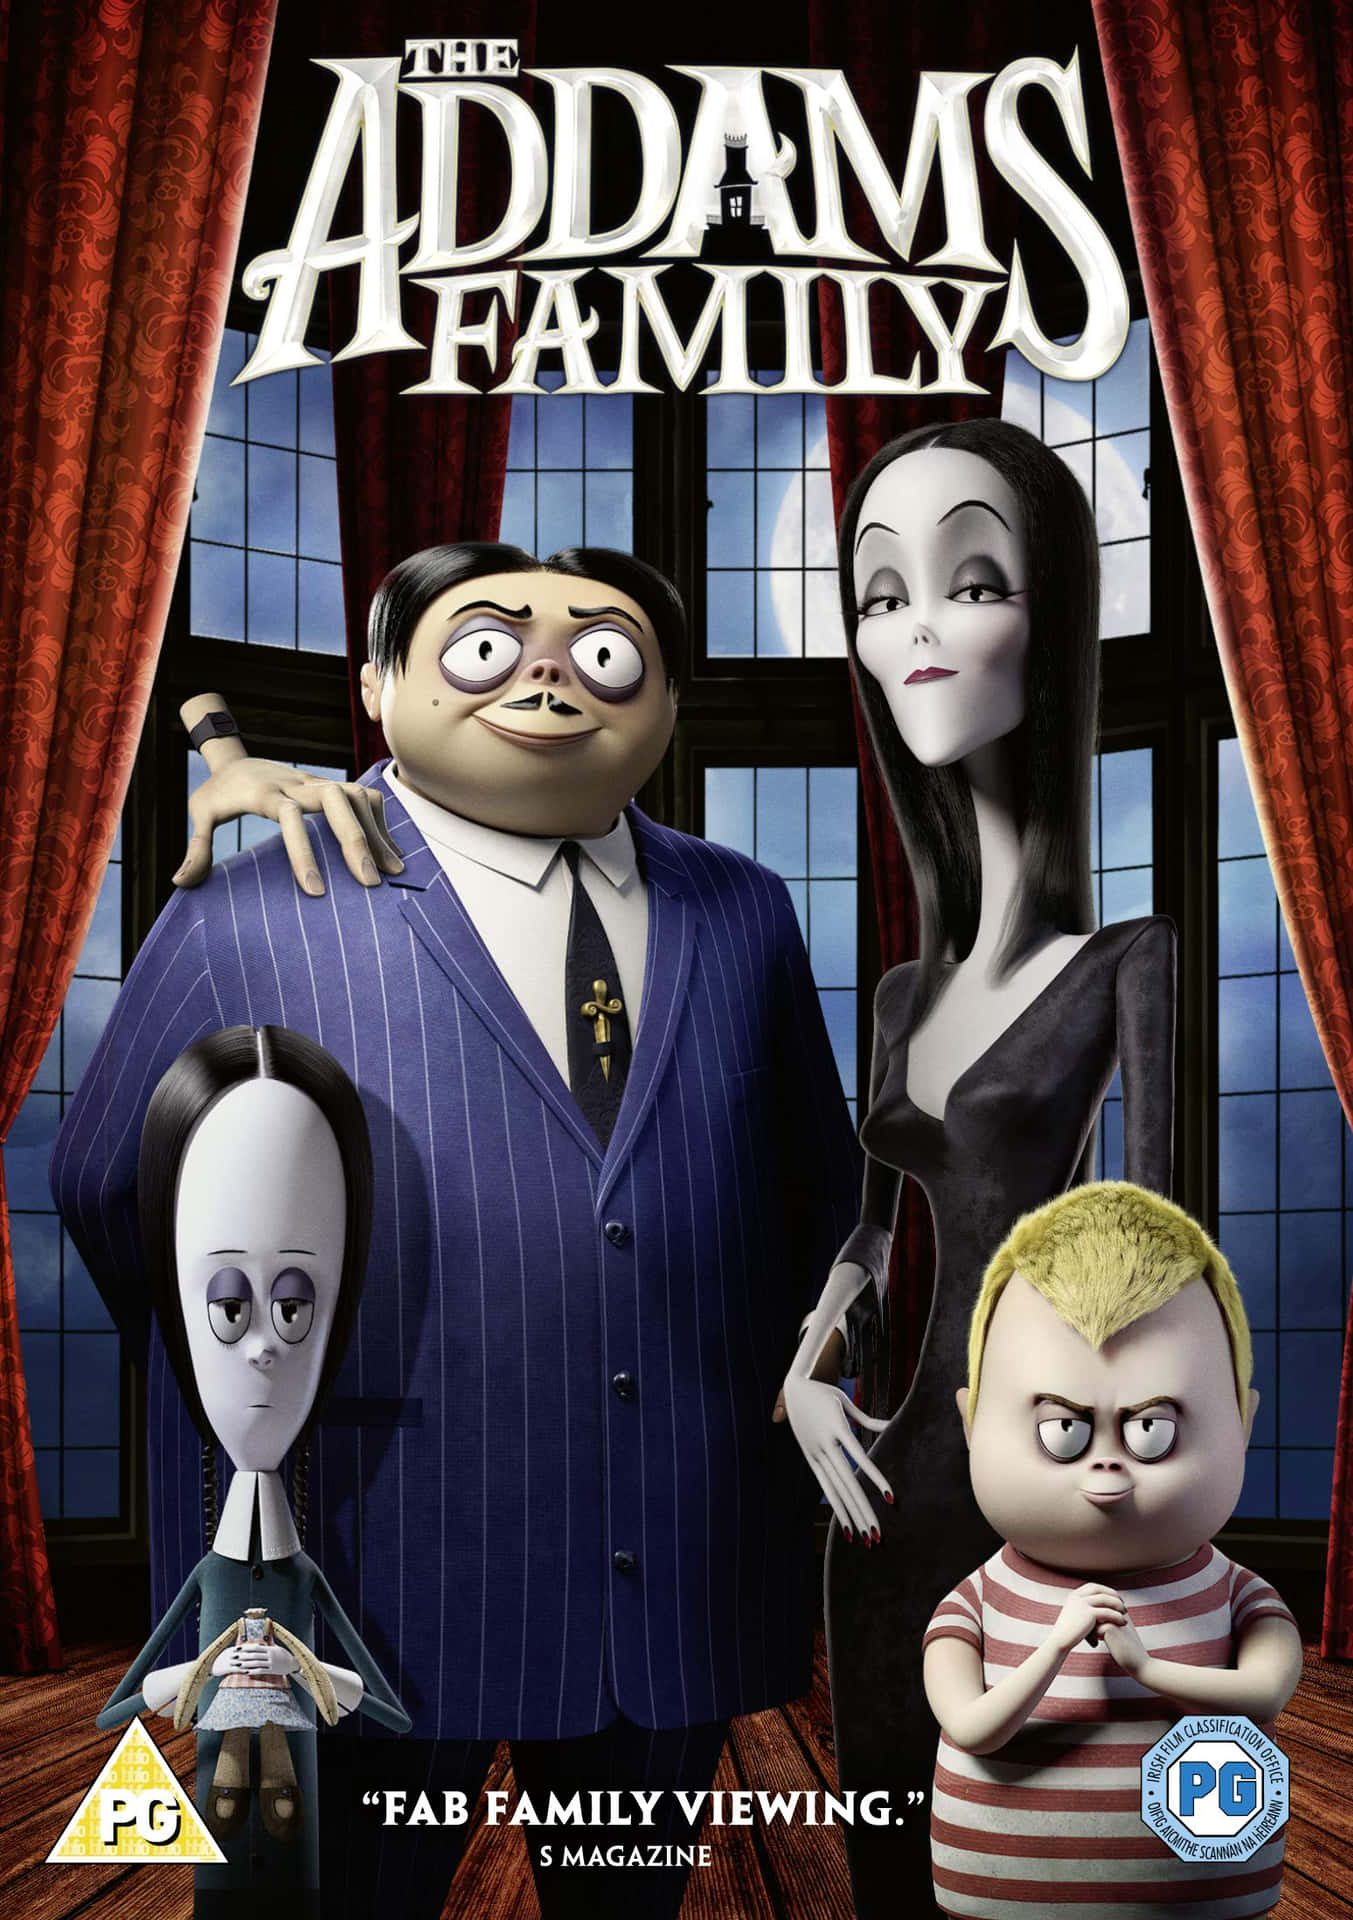 The eccentric Addams Family